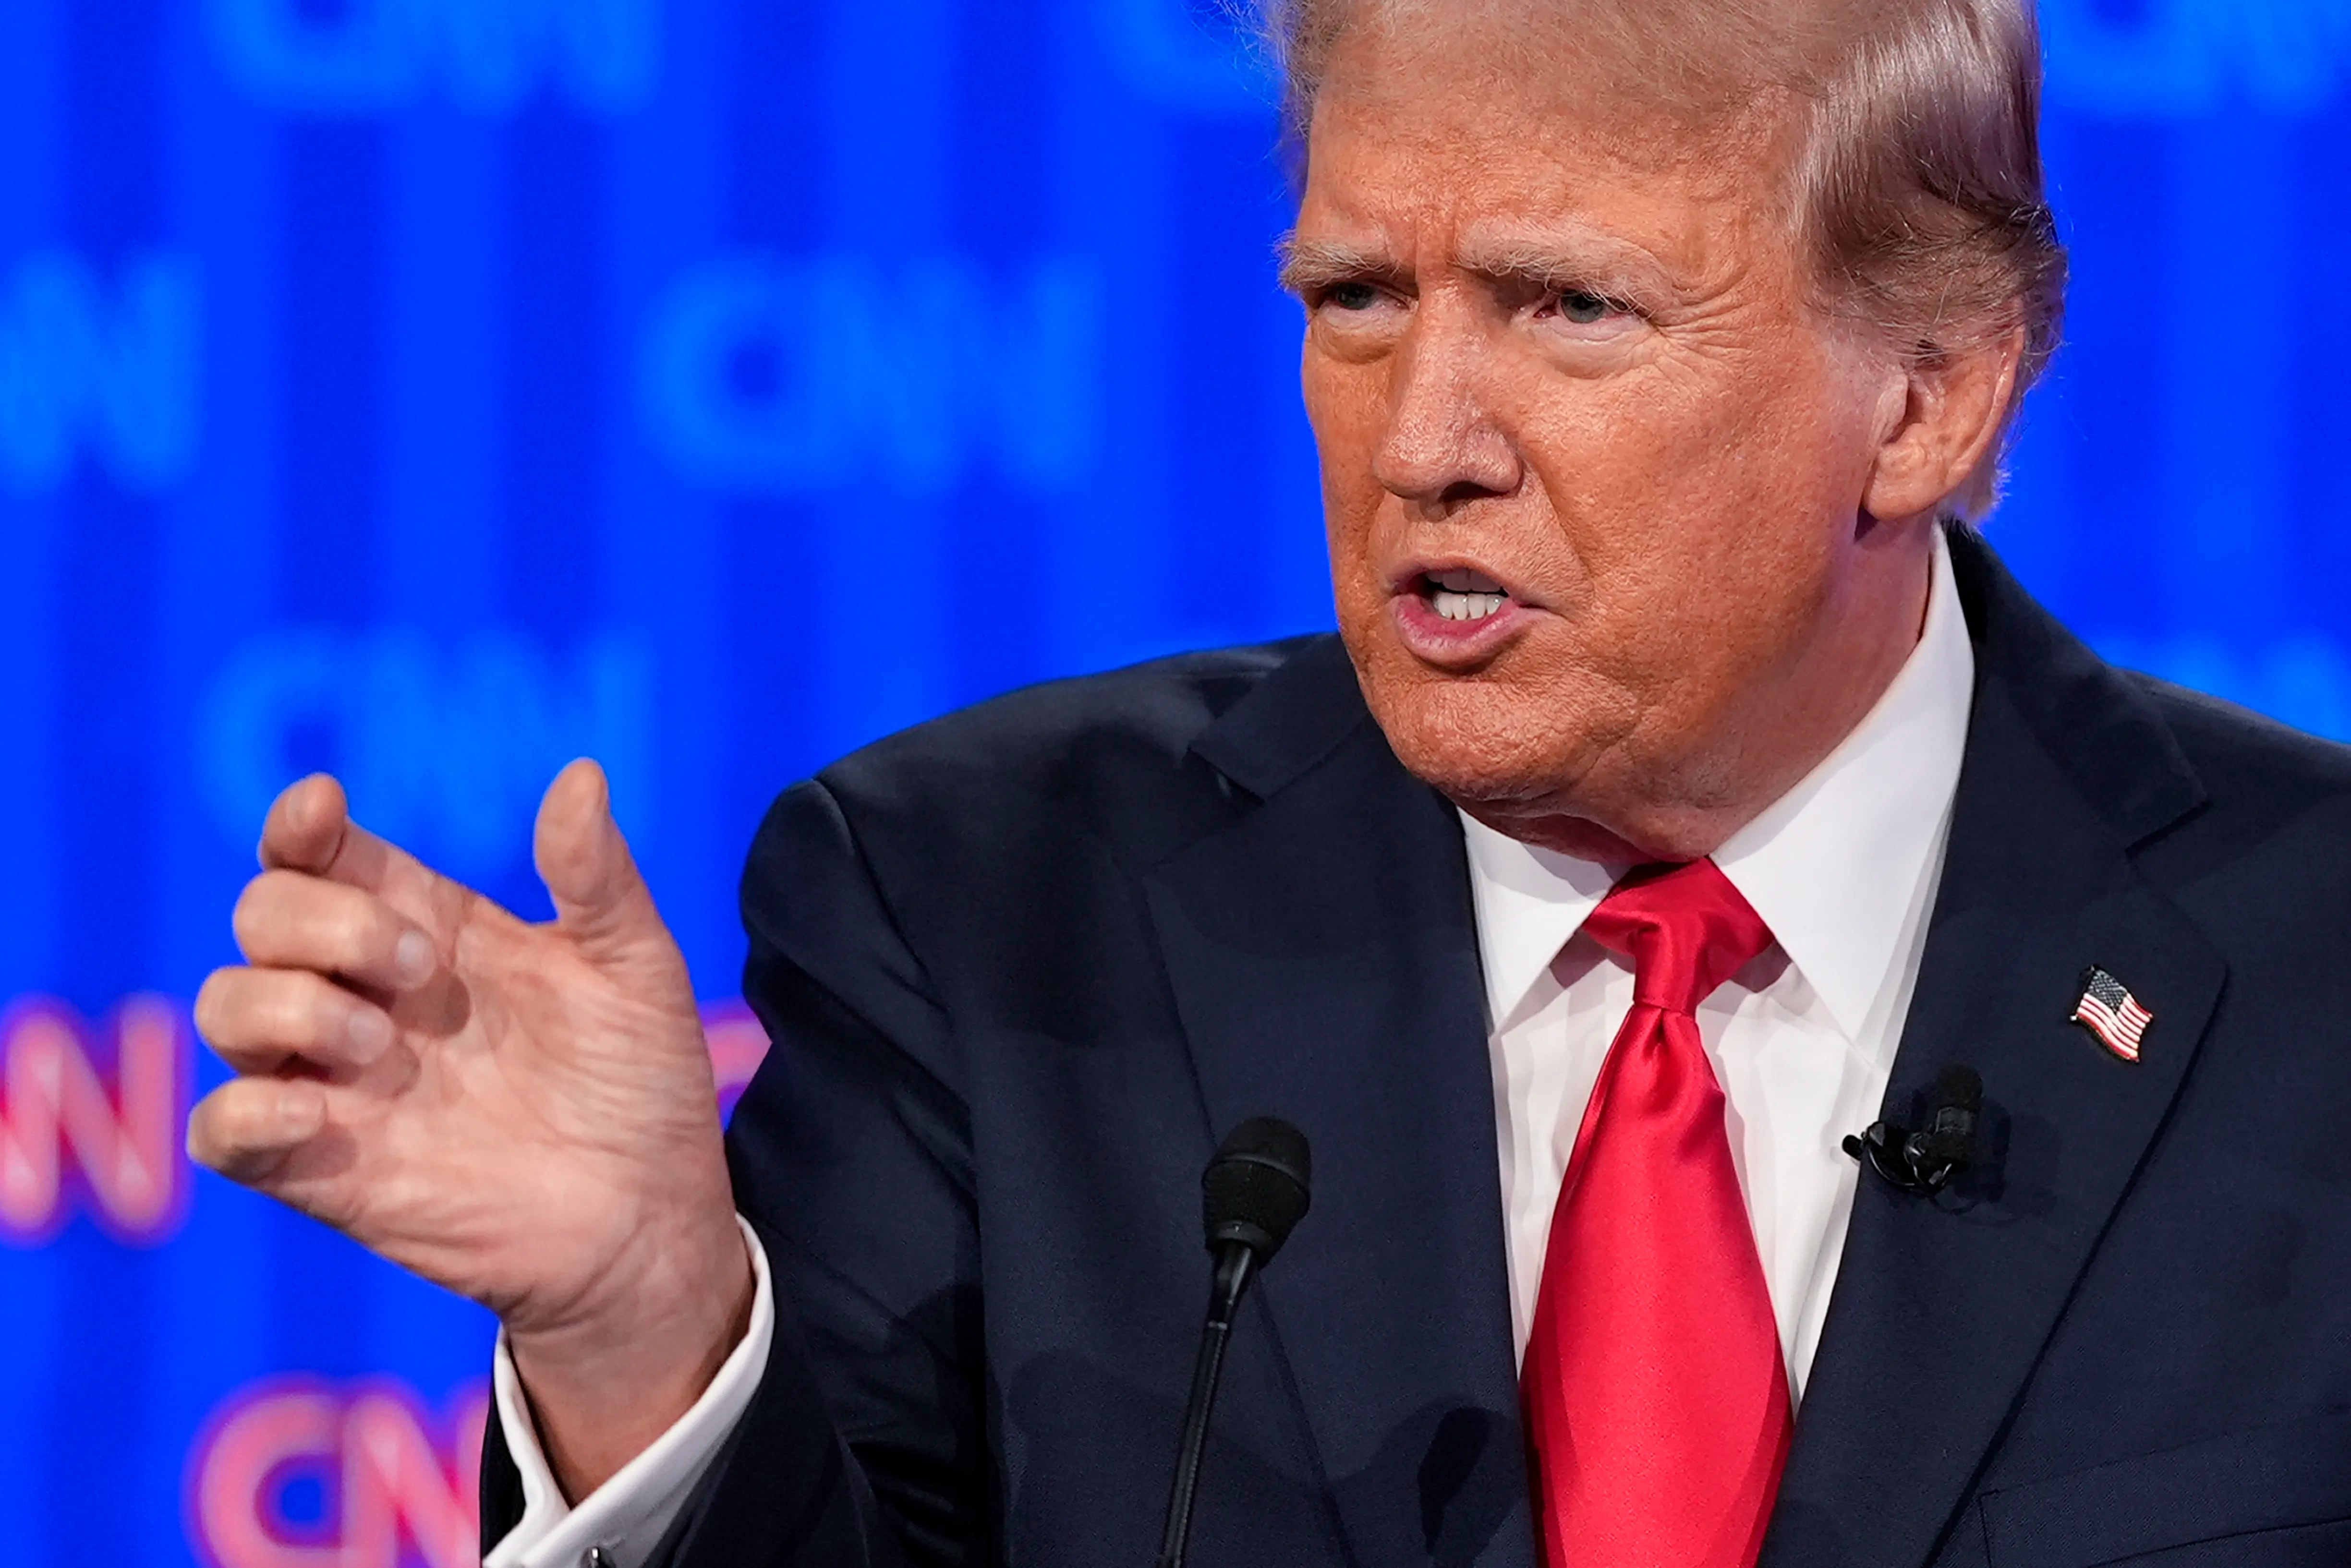 El comité editorial escribe que el debate sirvió como recordatorio de cómo serían otros cuatro años de Trump: más mentiras, agravios, narcisismo y odio.